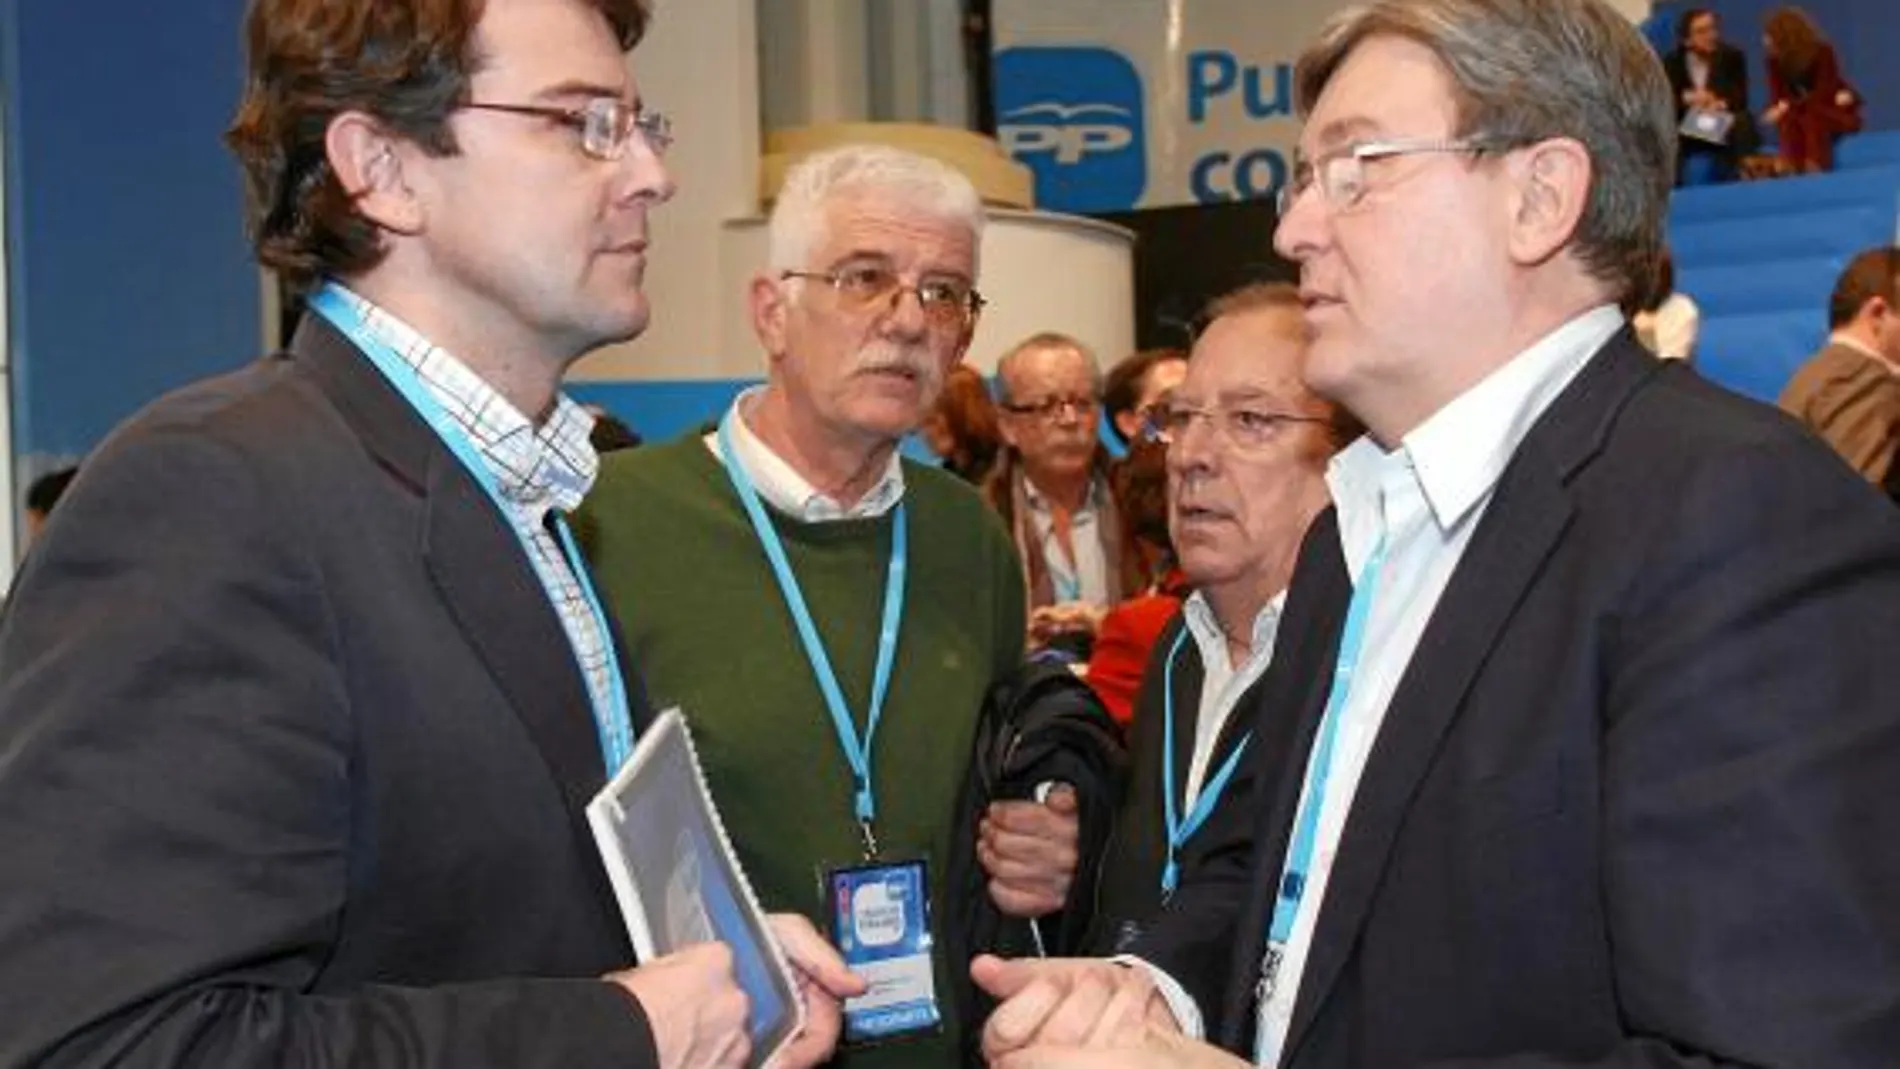 Fernández Mañueco junto a Fernández Santiago y miembros del PP en la Convención Popular de Sevilla